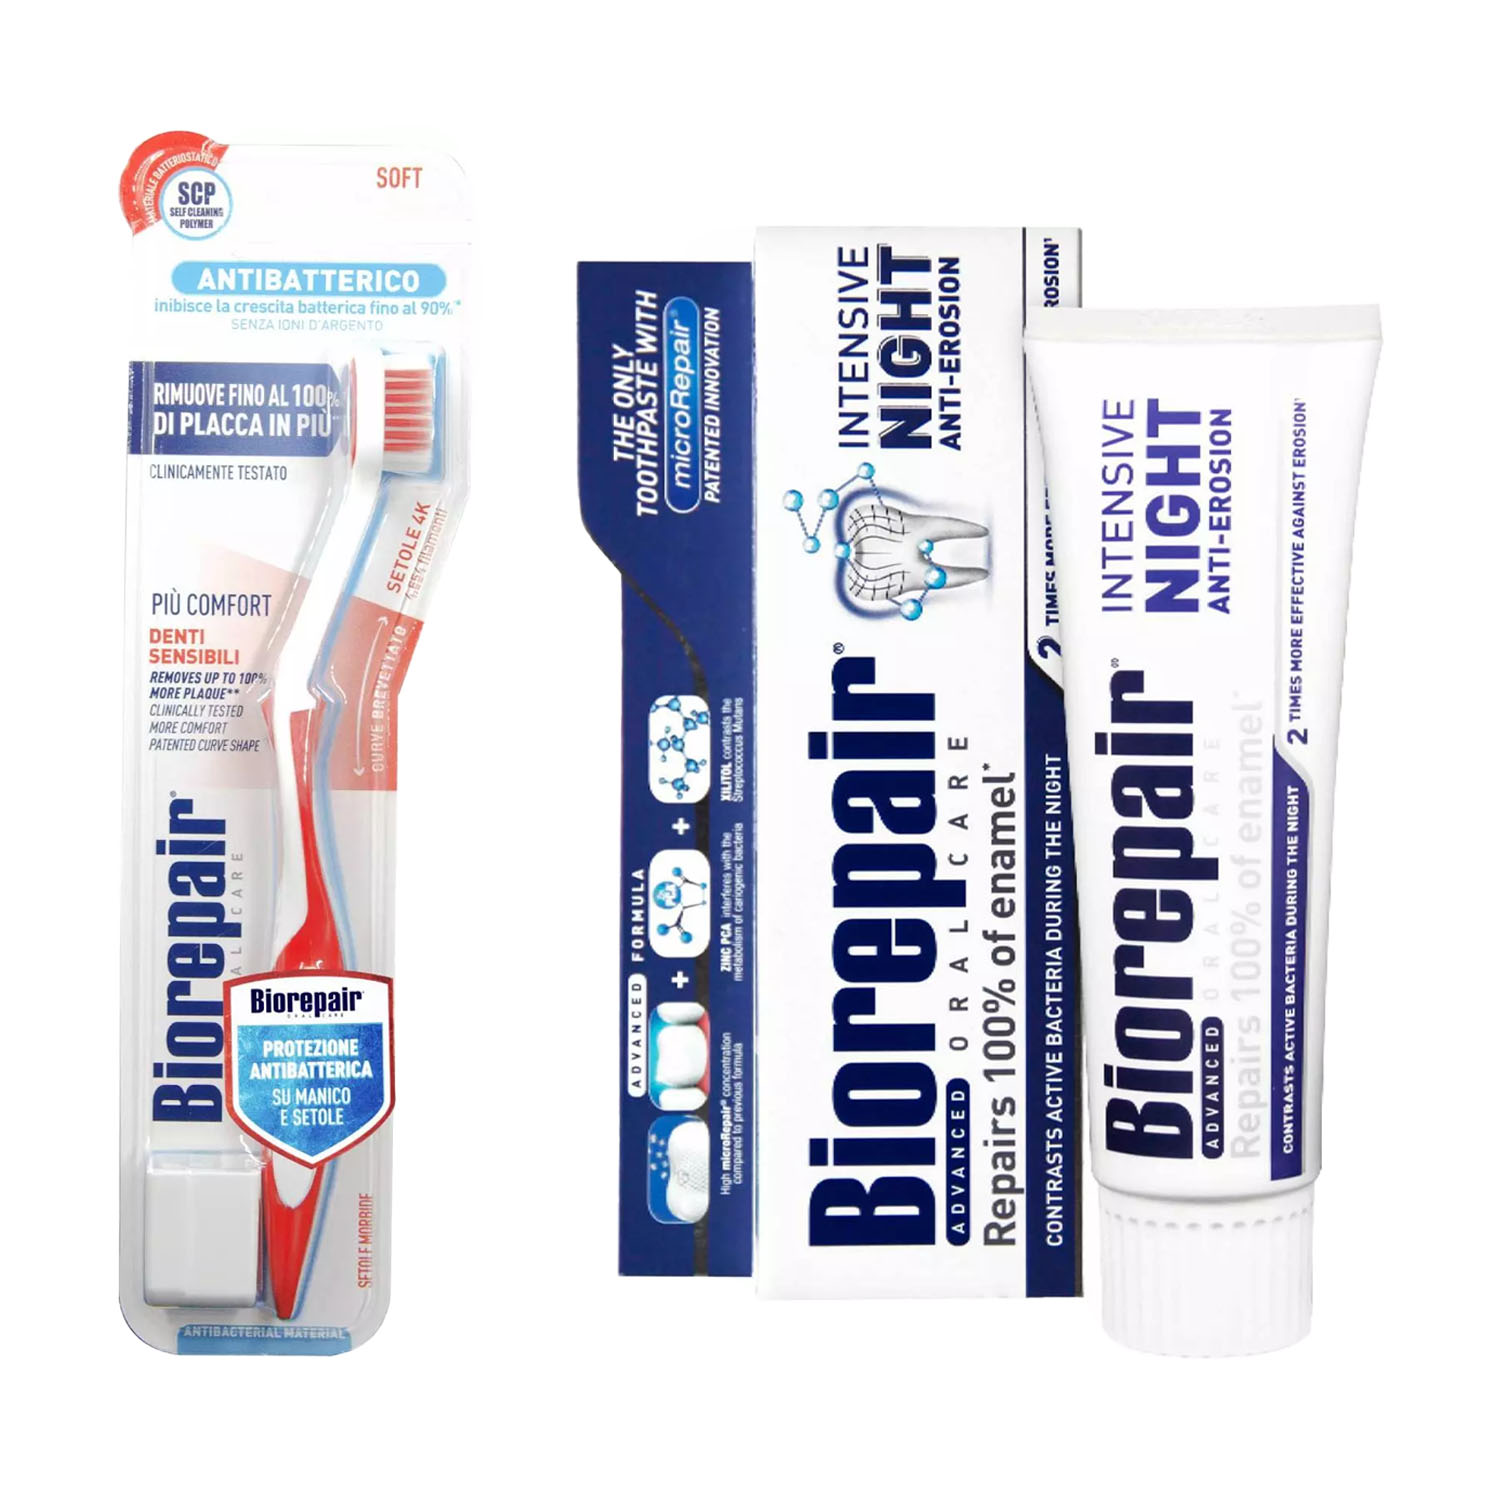 Biorepair Набор для чувствительных зубов: зубная паста 75 мл + зубная щетка (Biorepair, Ежедневная забота) biorepair набор зубных паст для комплексной защиты зубов и эмали 2х75 мл biorepair ежедневная забота